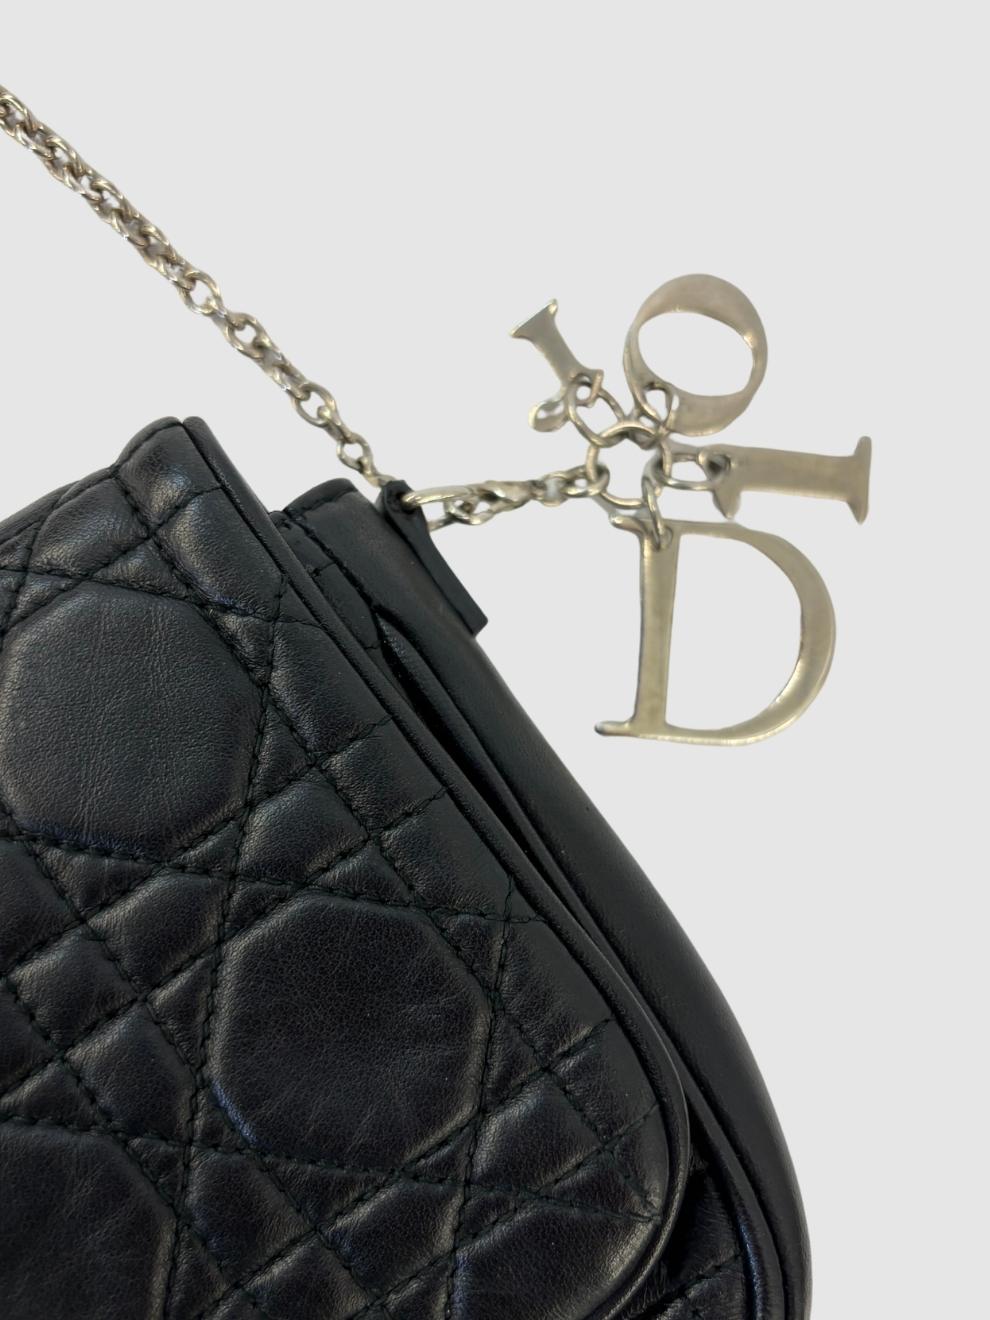 Schwarze Lady Dior Wallet on Chain Crossbody-Bag von Dior